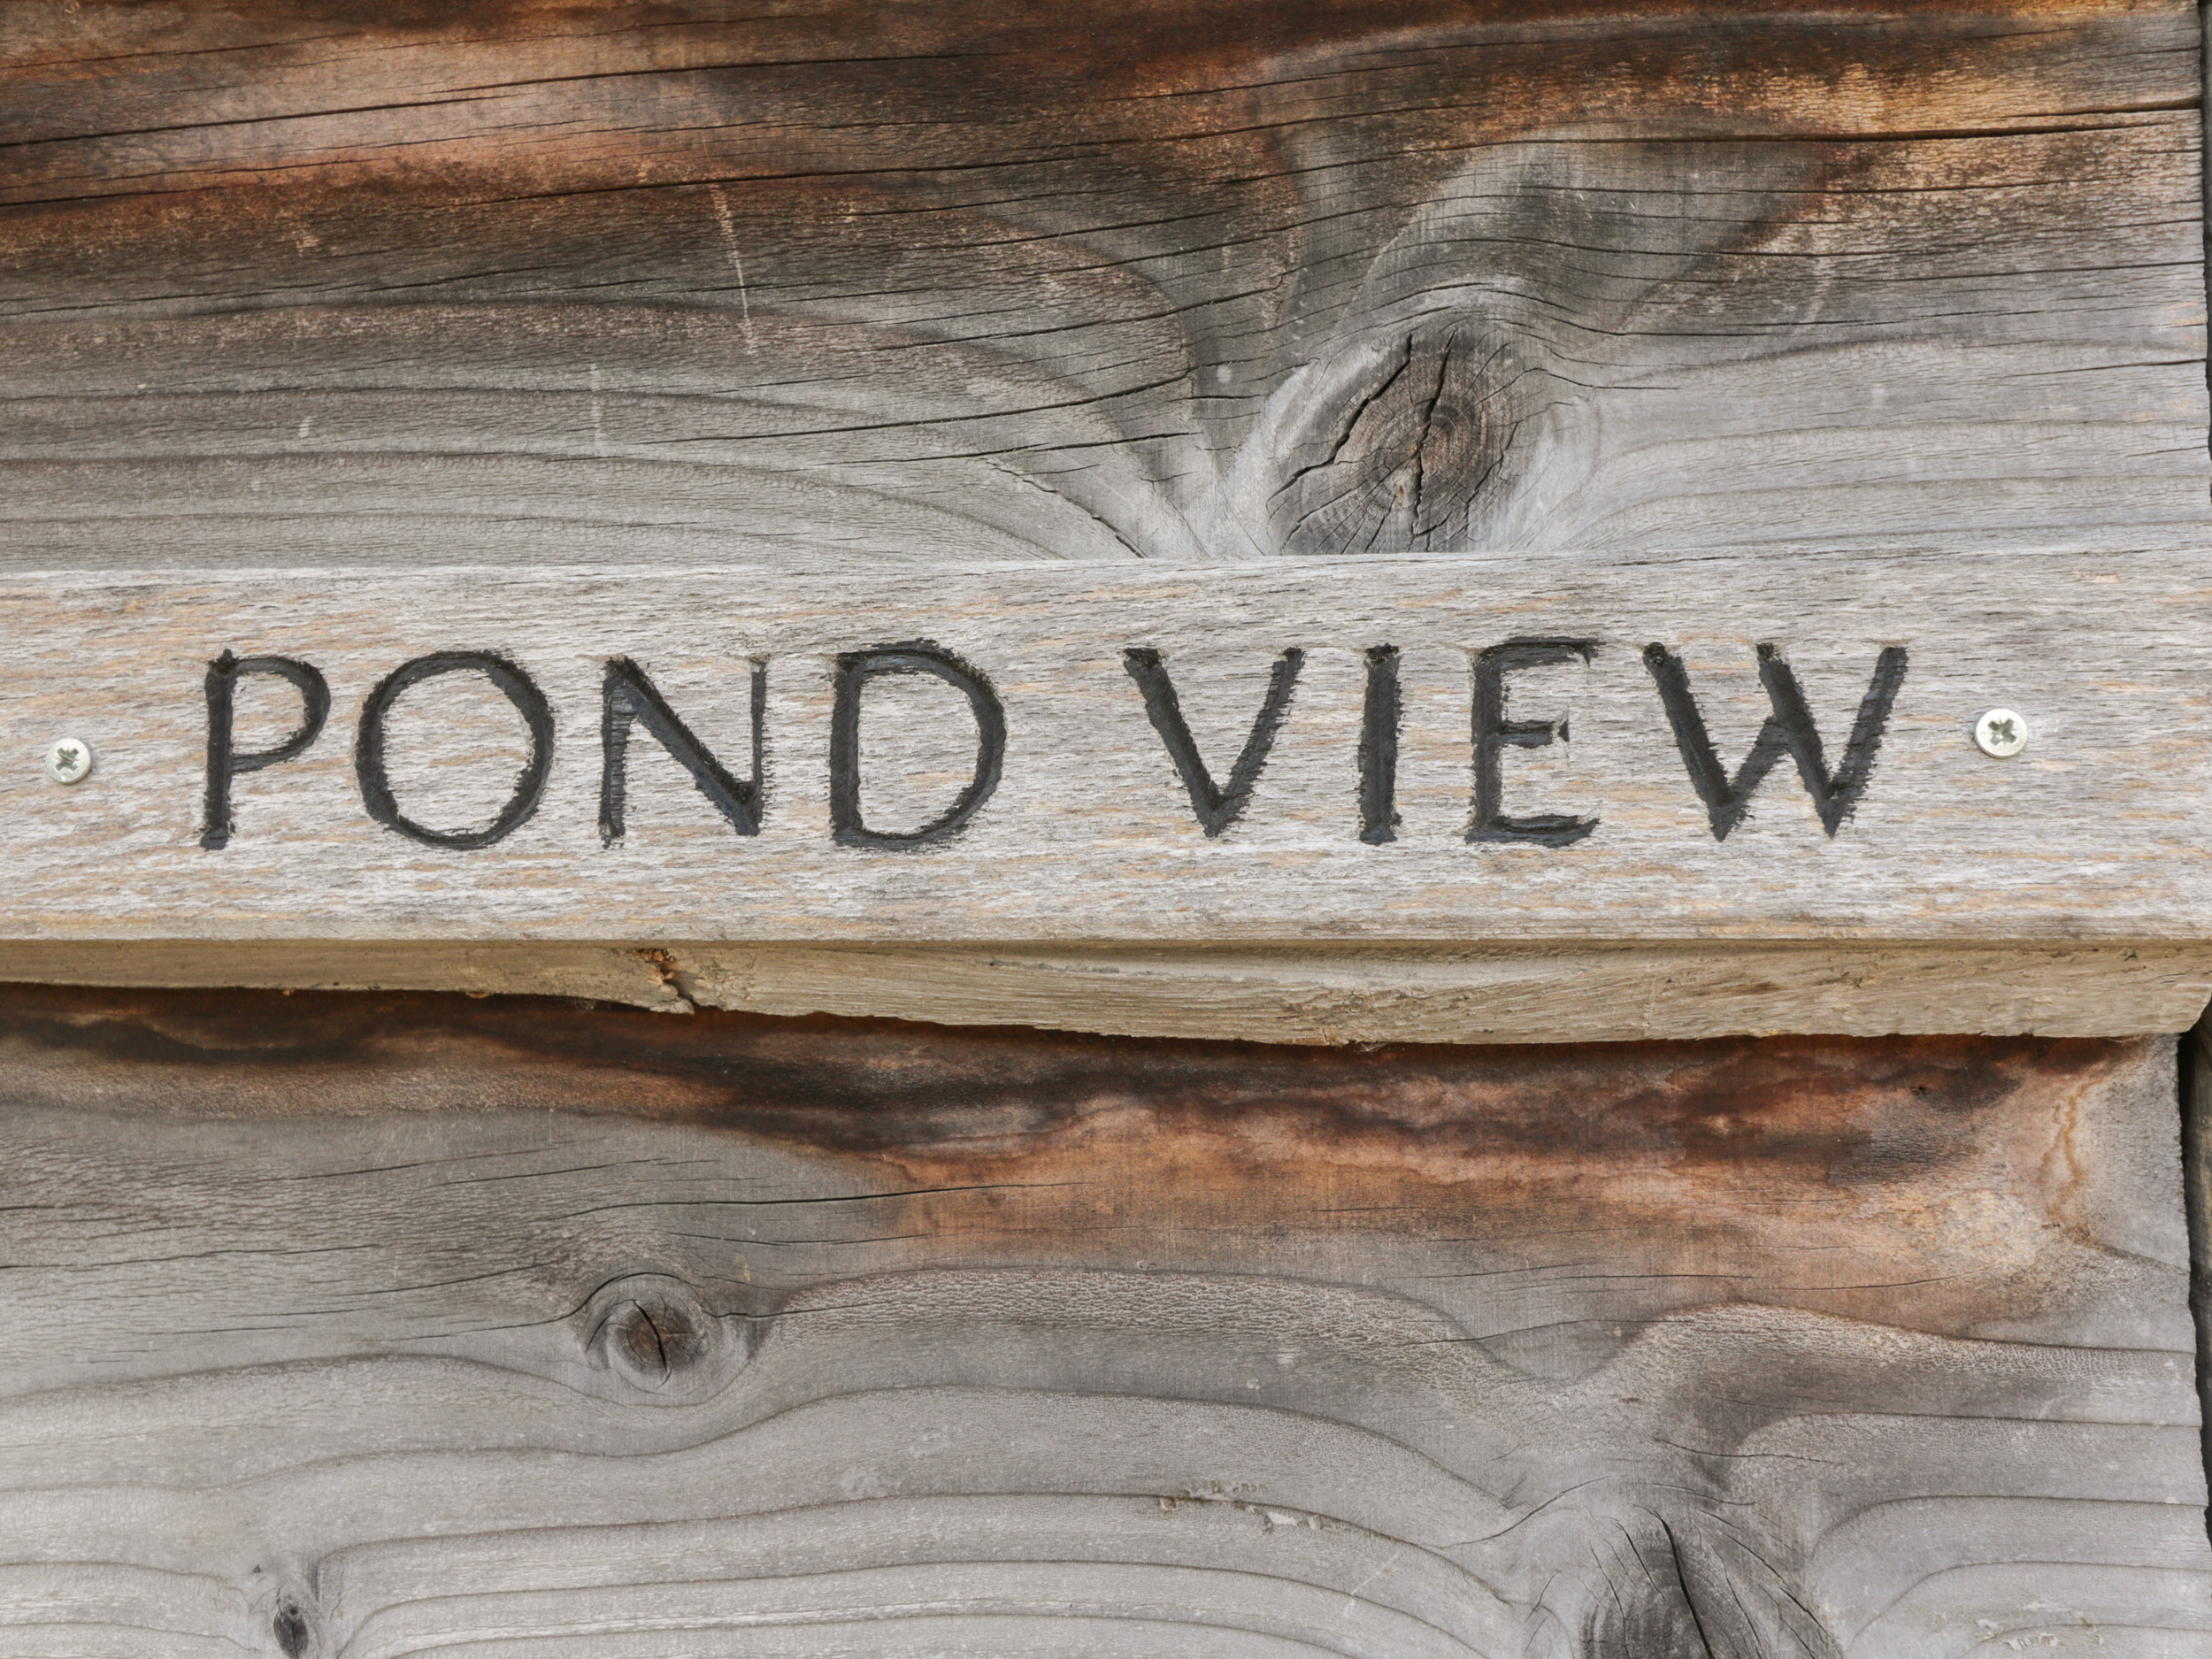 Pond View, Rockbourne